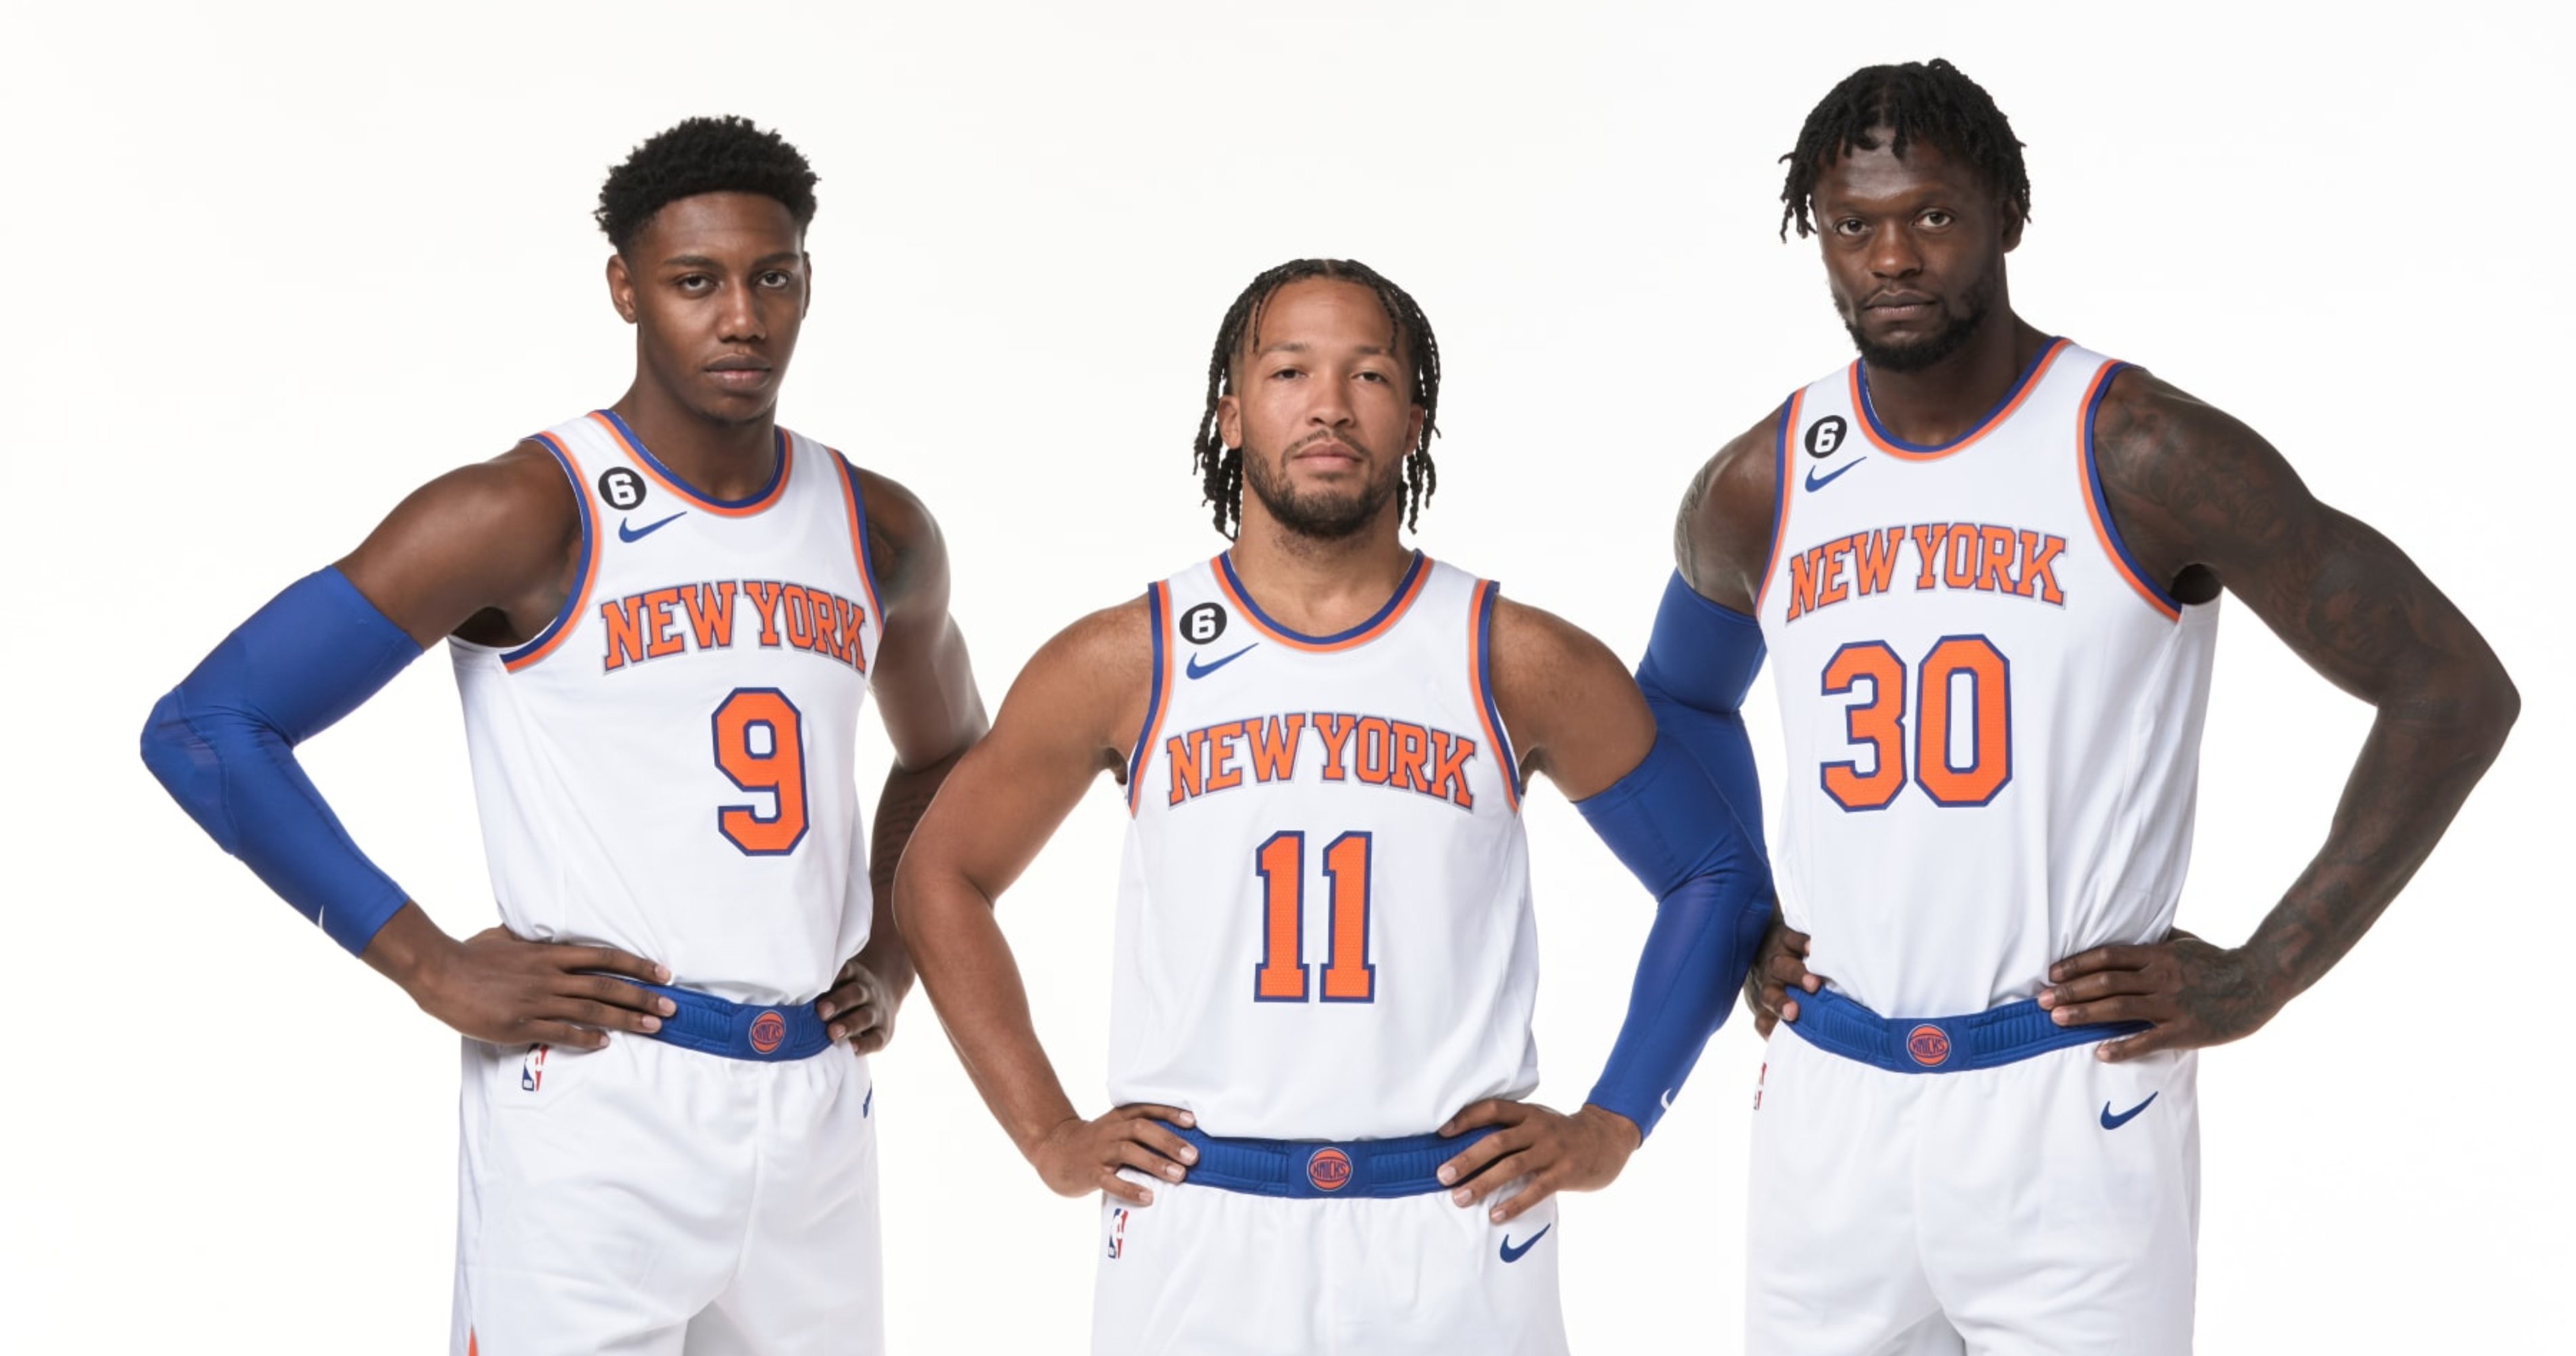 New York Knicks: Breaking News, Rumors & Highlights